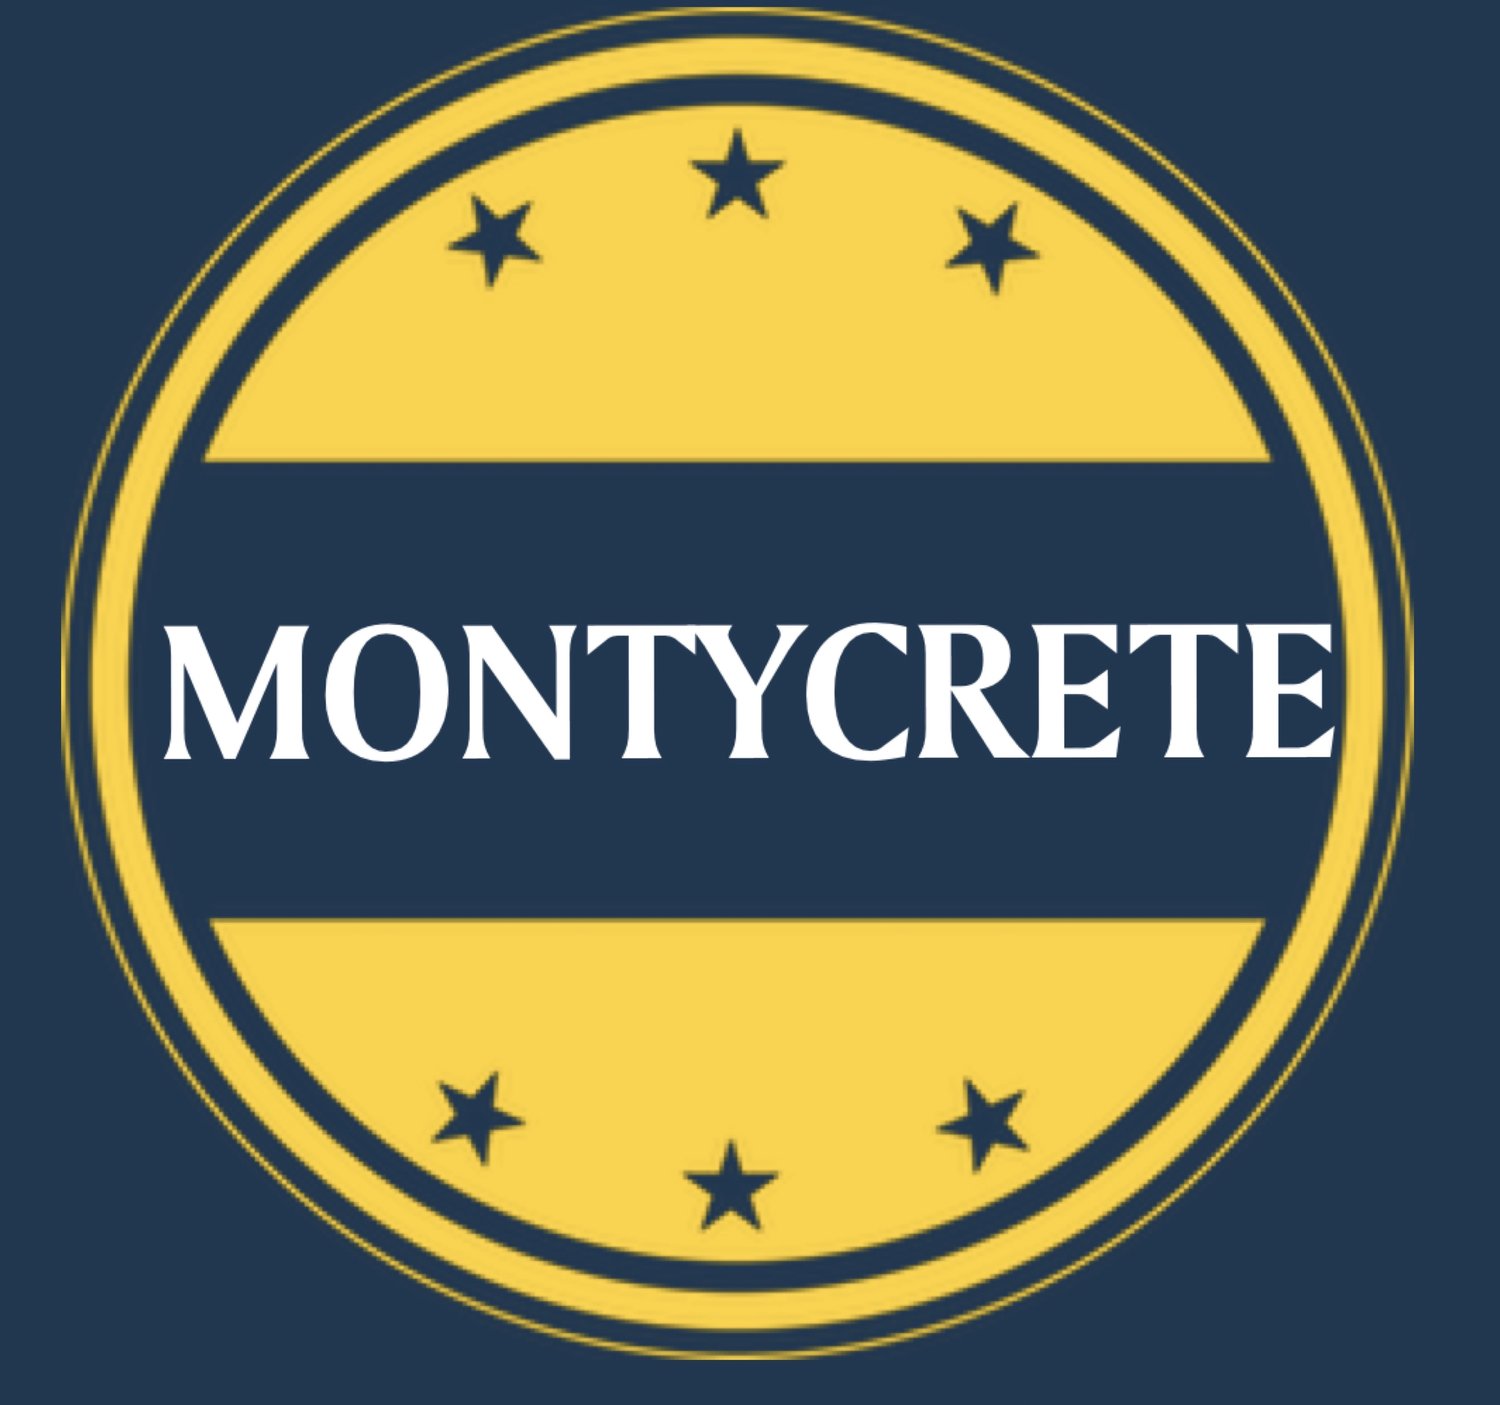 Montycrete PTY Ltd